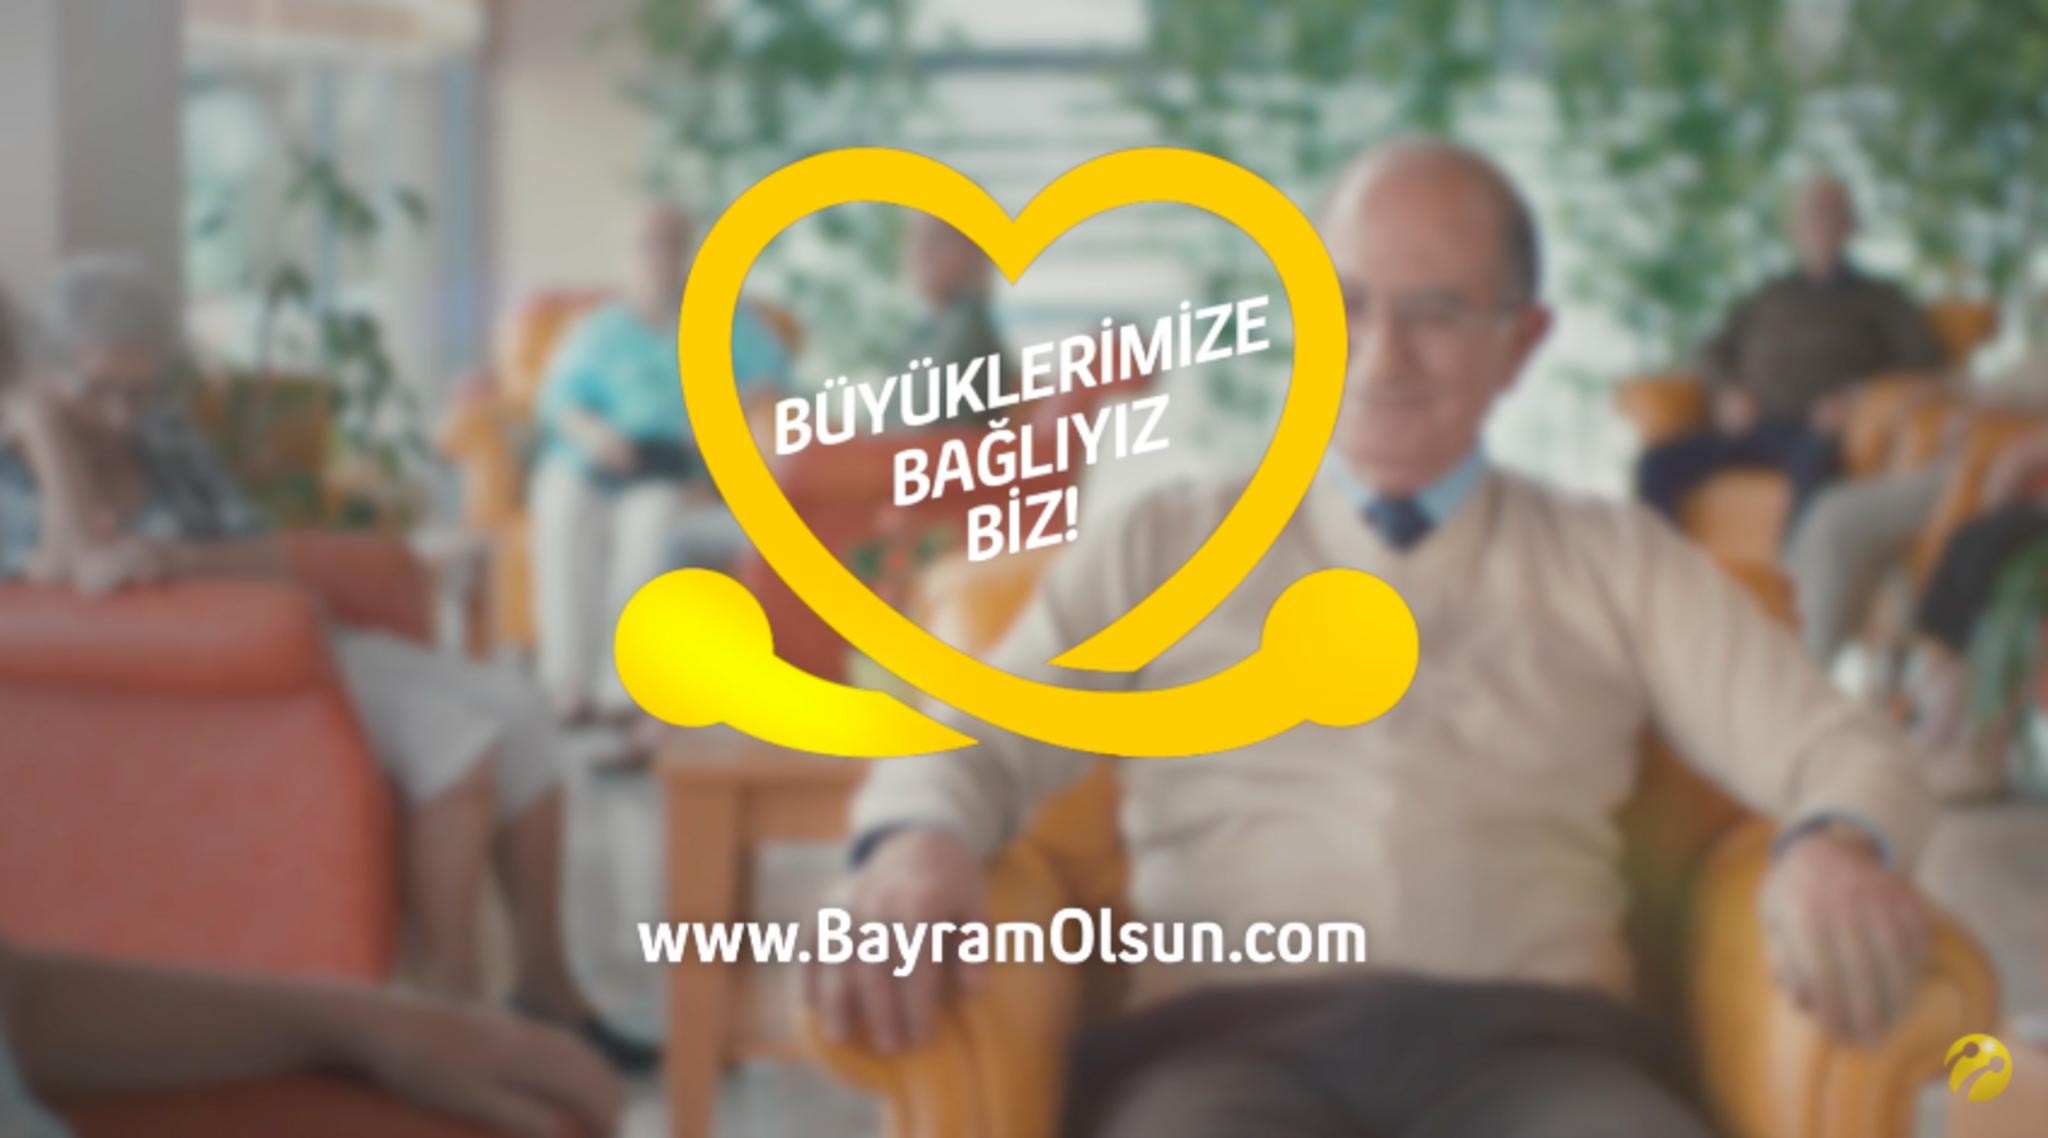 Bayram Olsun (A Real Happy Holiday)